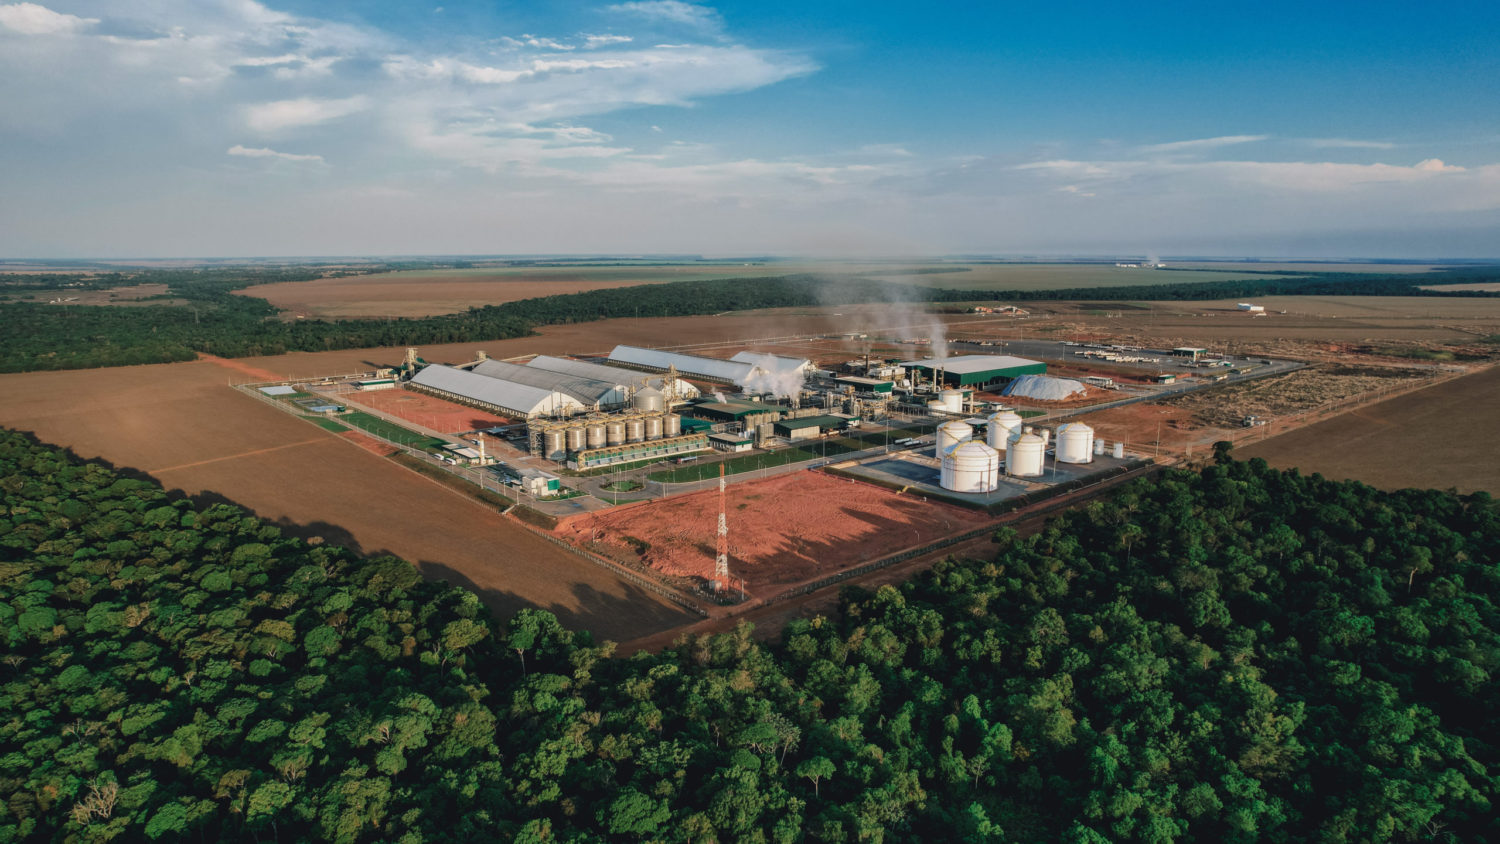 Produção global de biocombustíveis precisa avançar, aponta IEA. Na imagem: Vista aérea das instalações e tanques de armazenamento na usina de etanol de milho da FS, em Sorriso, no Mato Grosso (Foto: Divulgação FS Bioenergia)